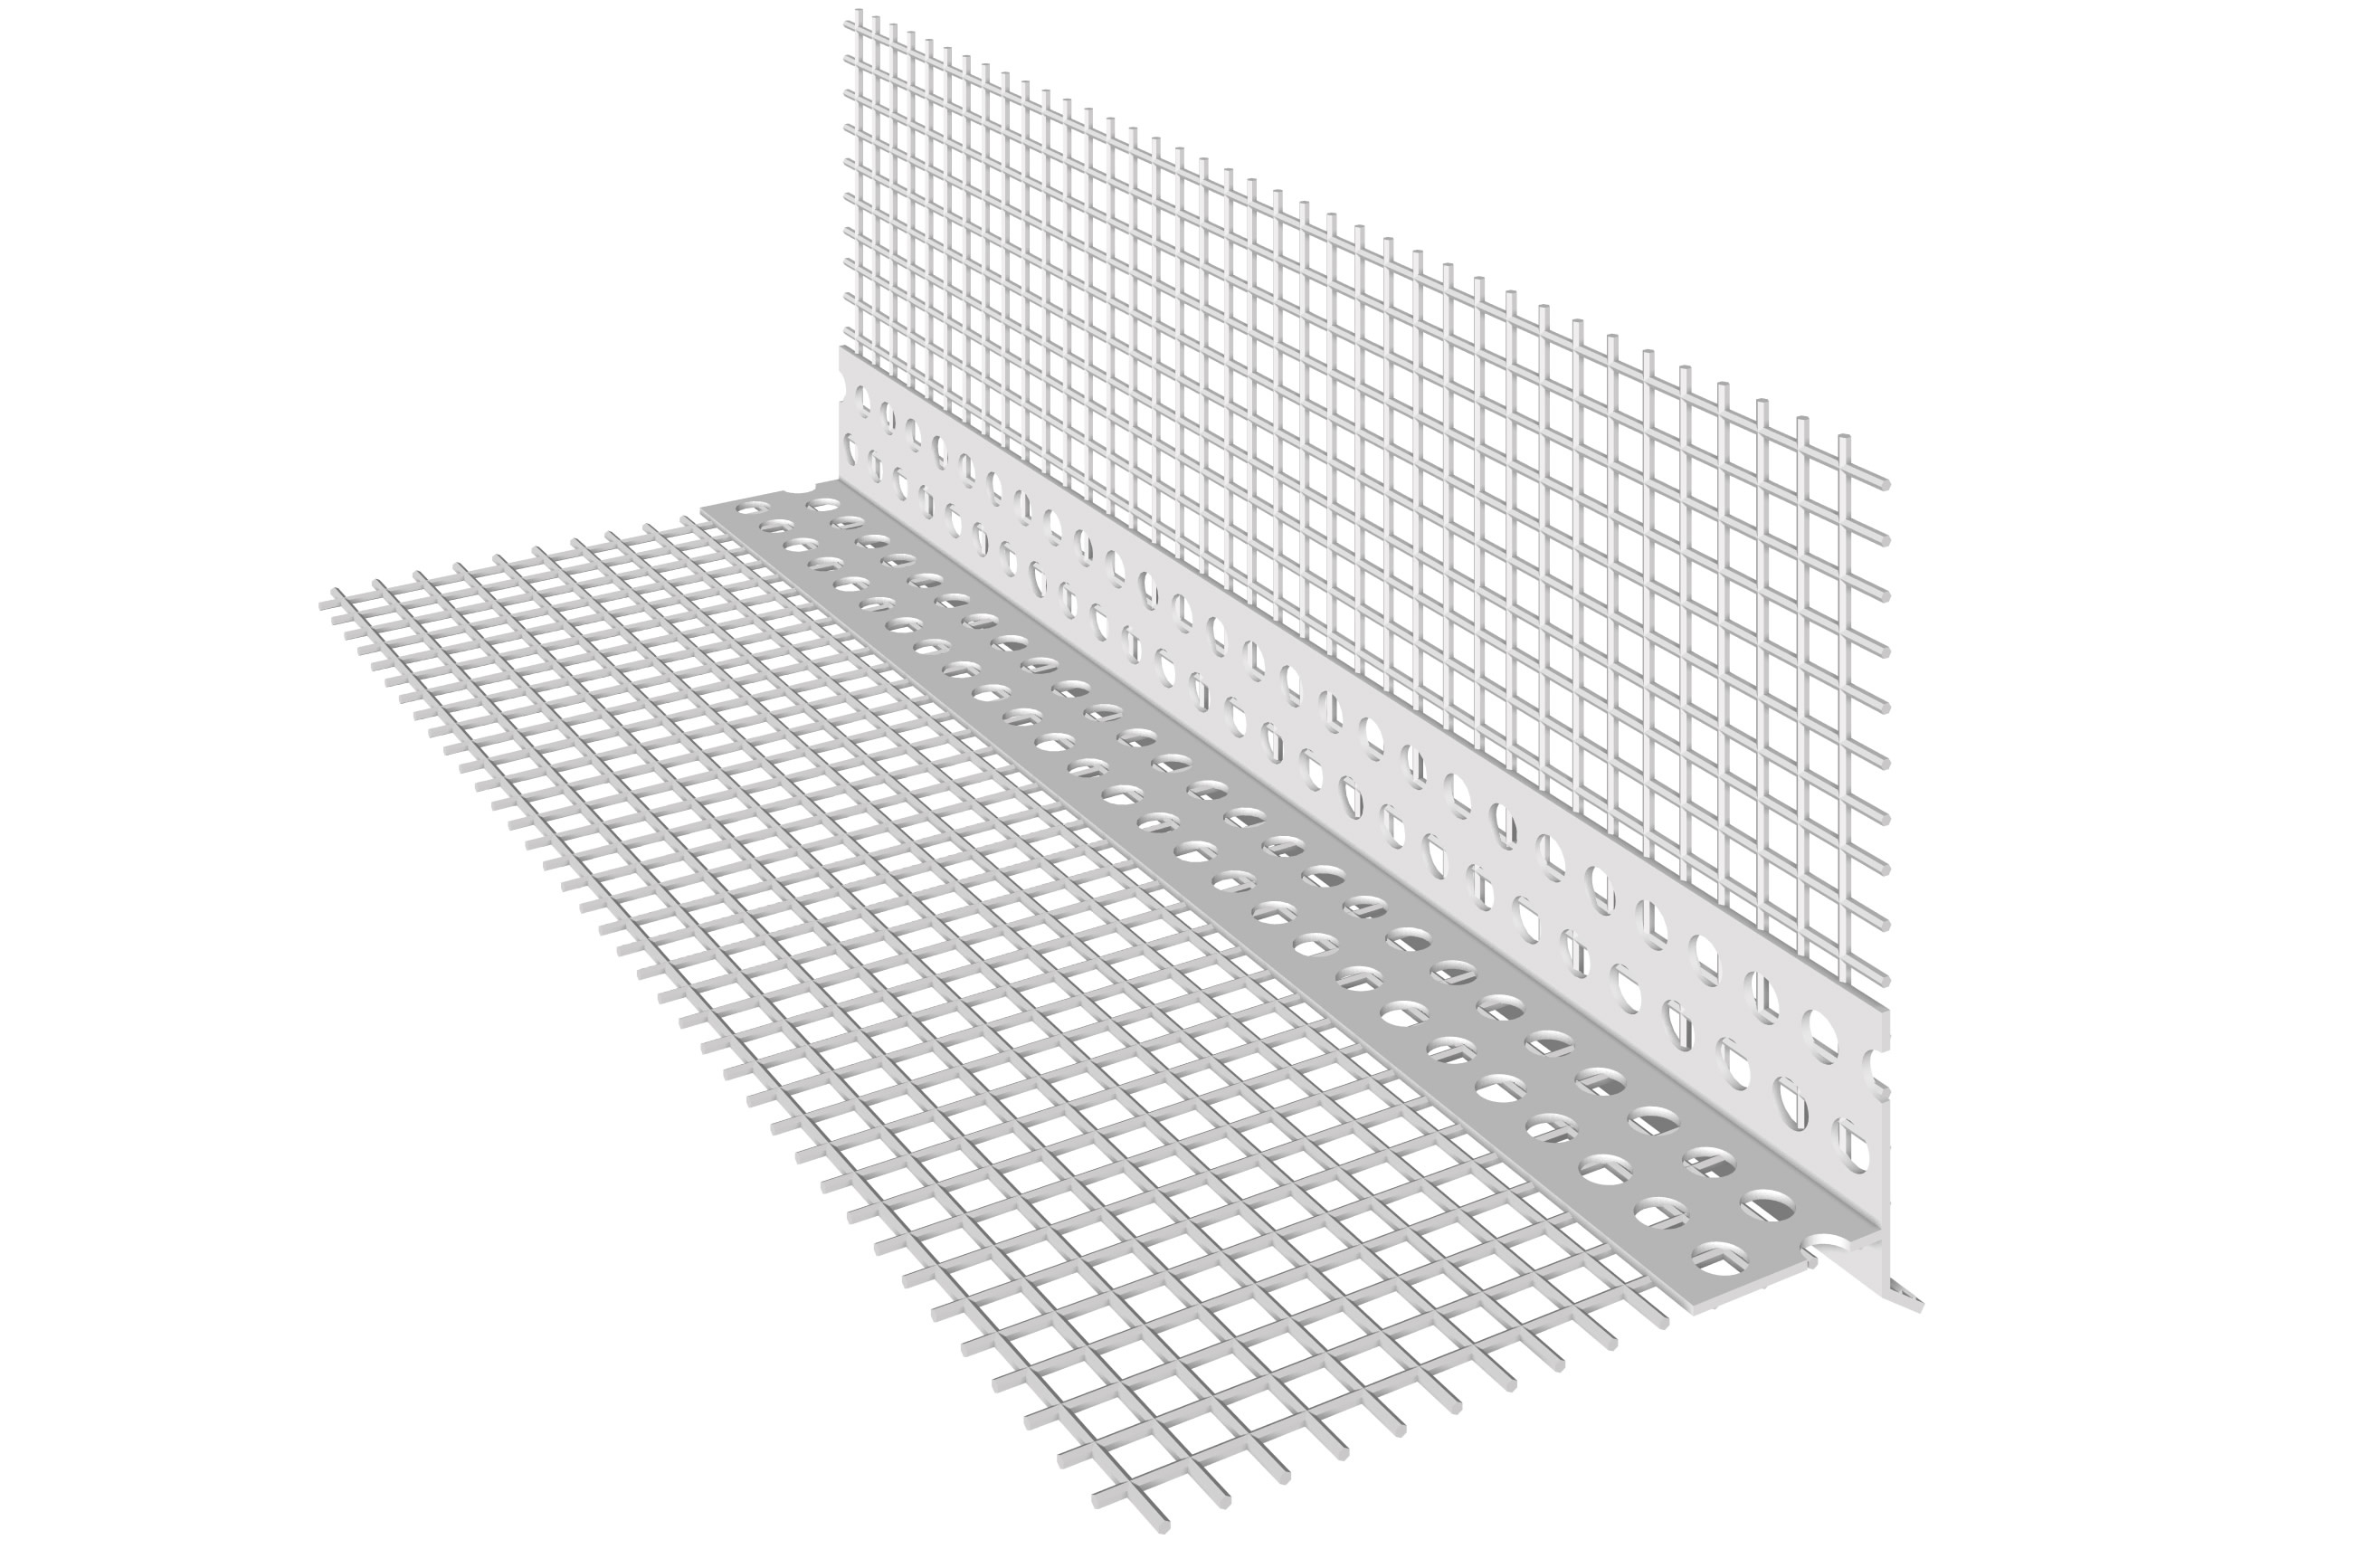 ESQUINERO DE PVC CON GOTERÓN DIAGONAL: Esquinero de PVC con malla de fibra de vidrio preencolada y goterón diagonal